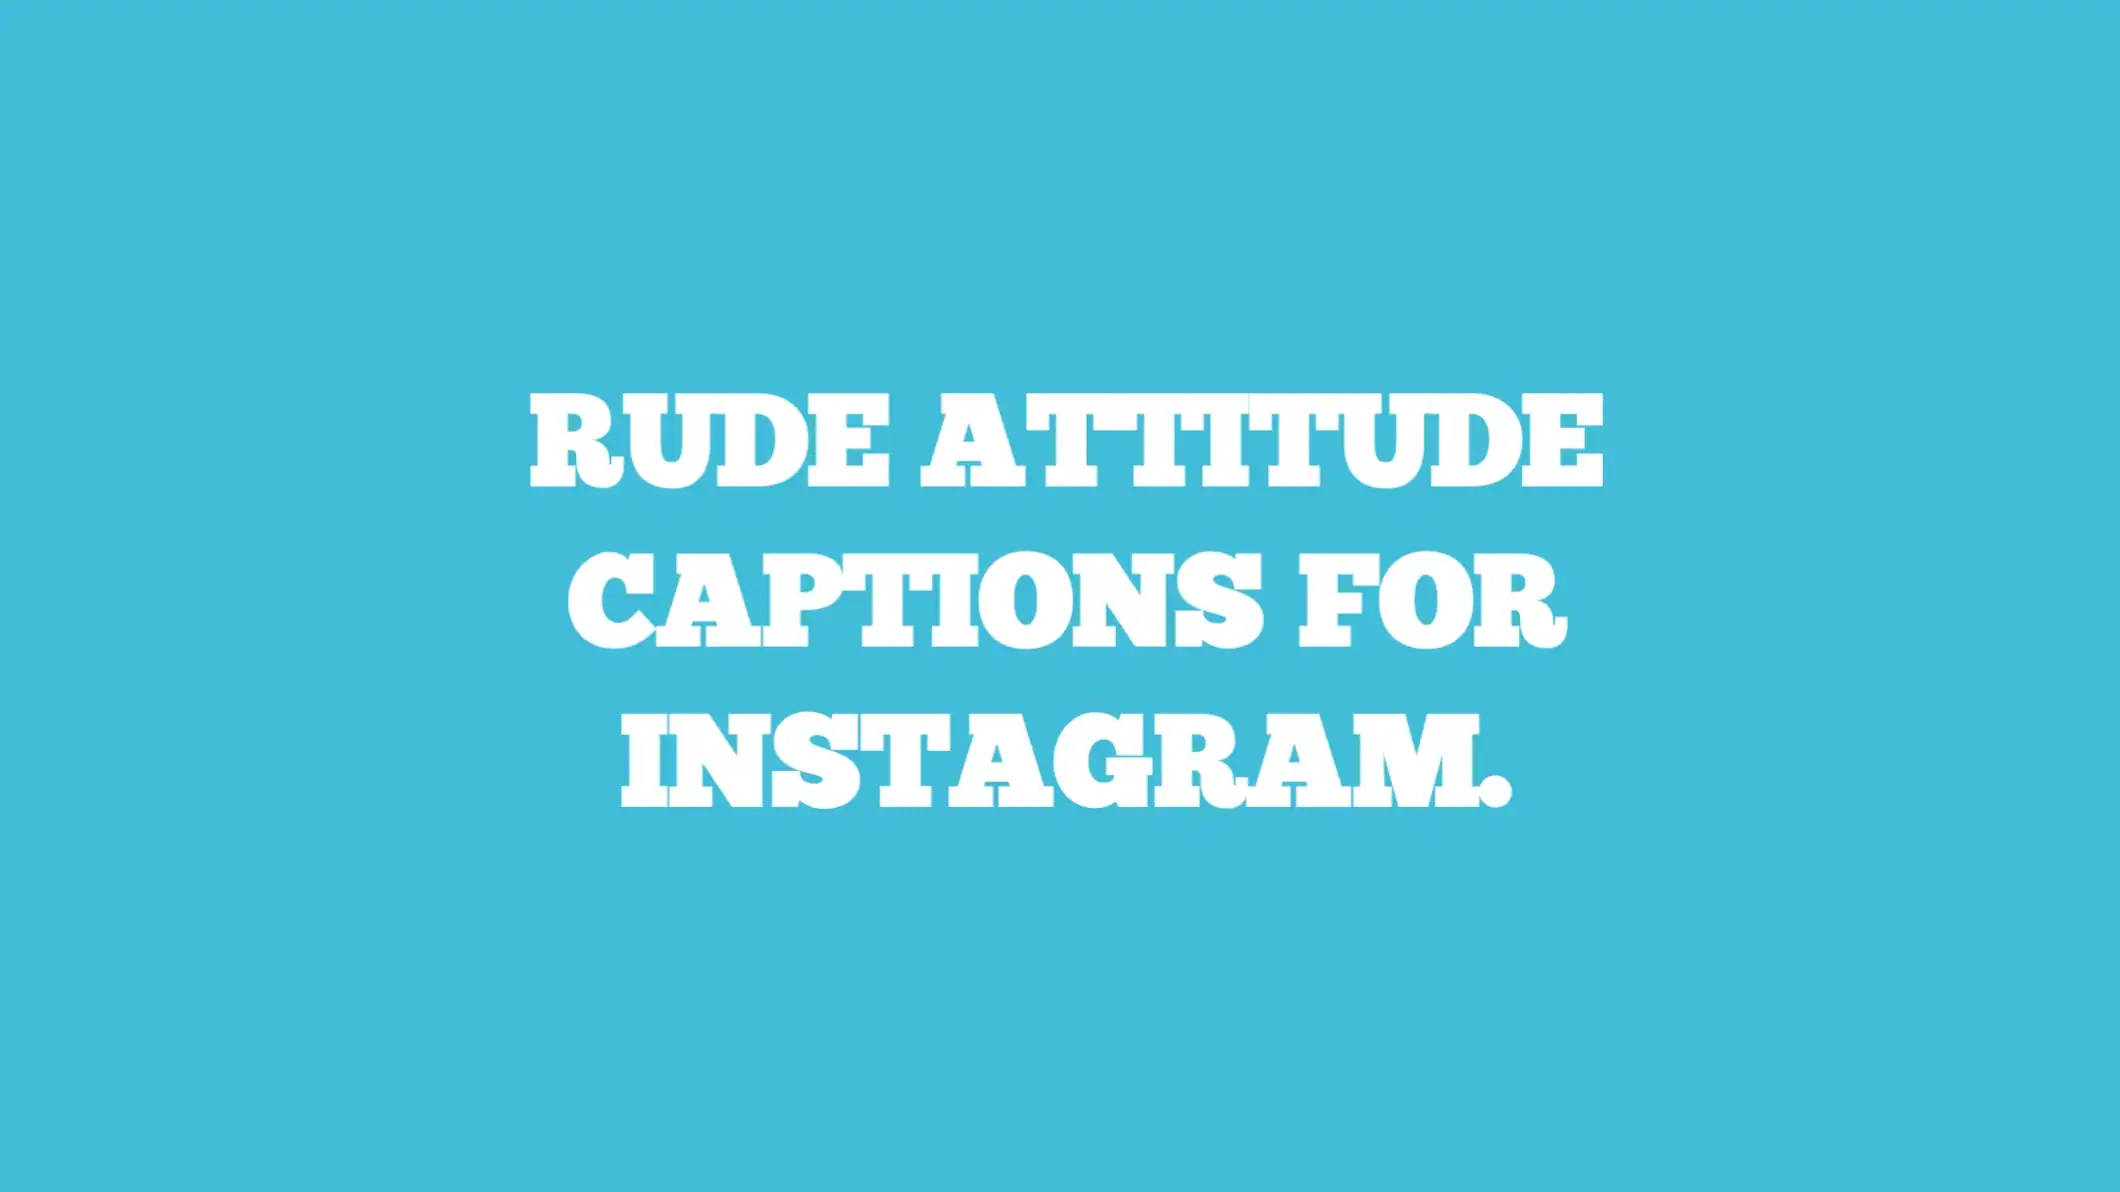 rude attitude captions for instagram